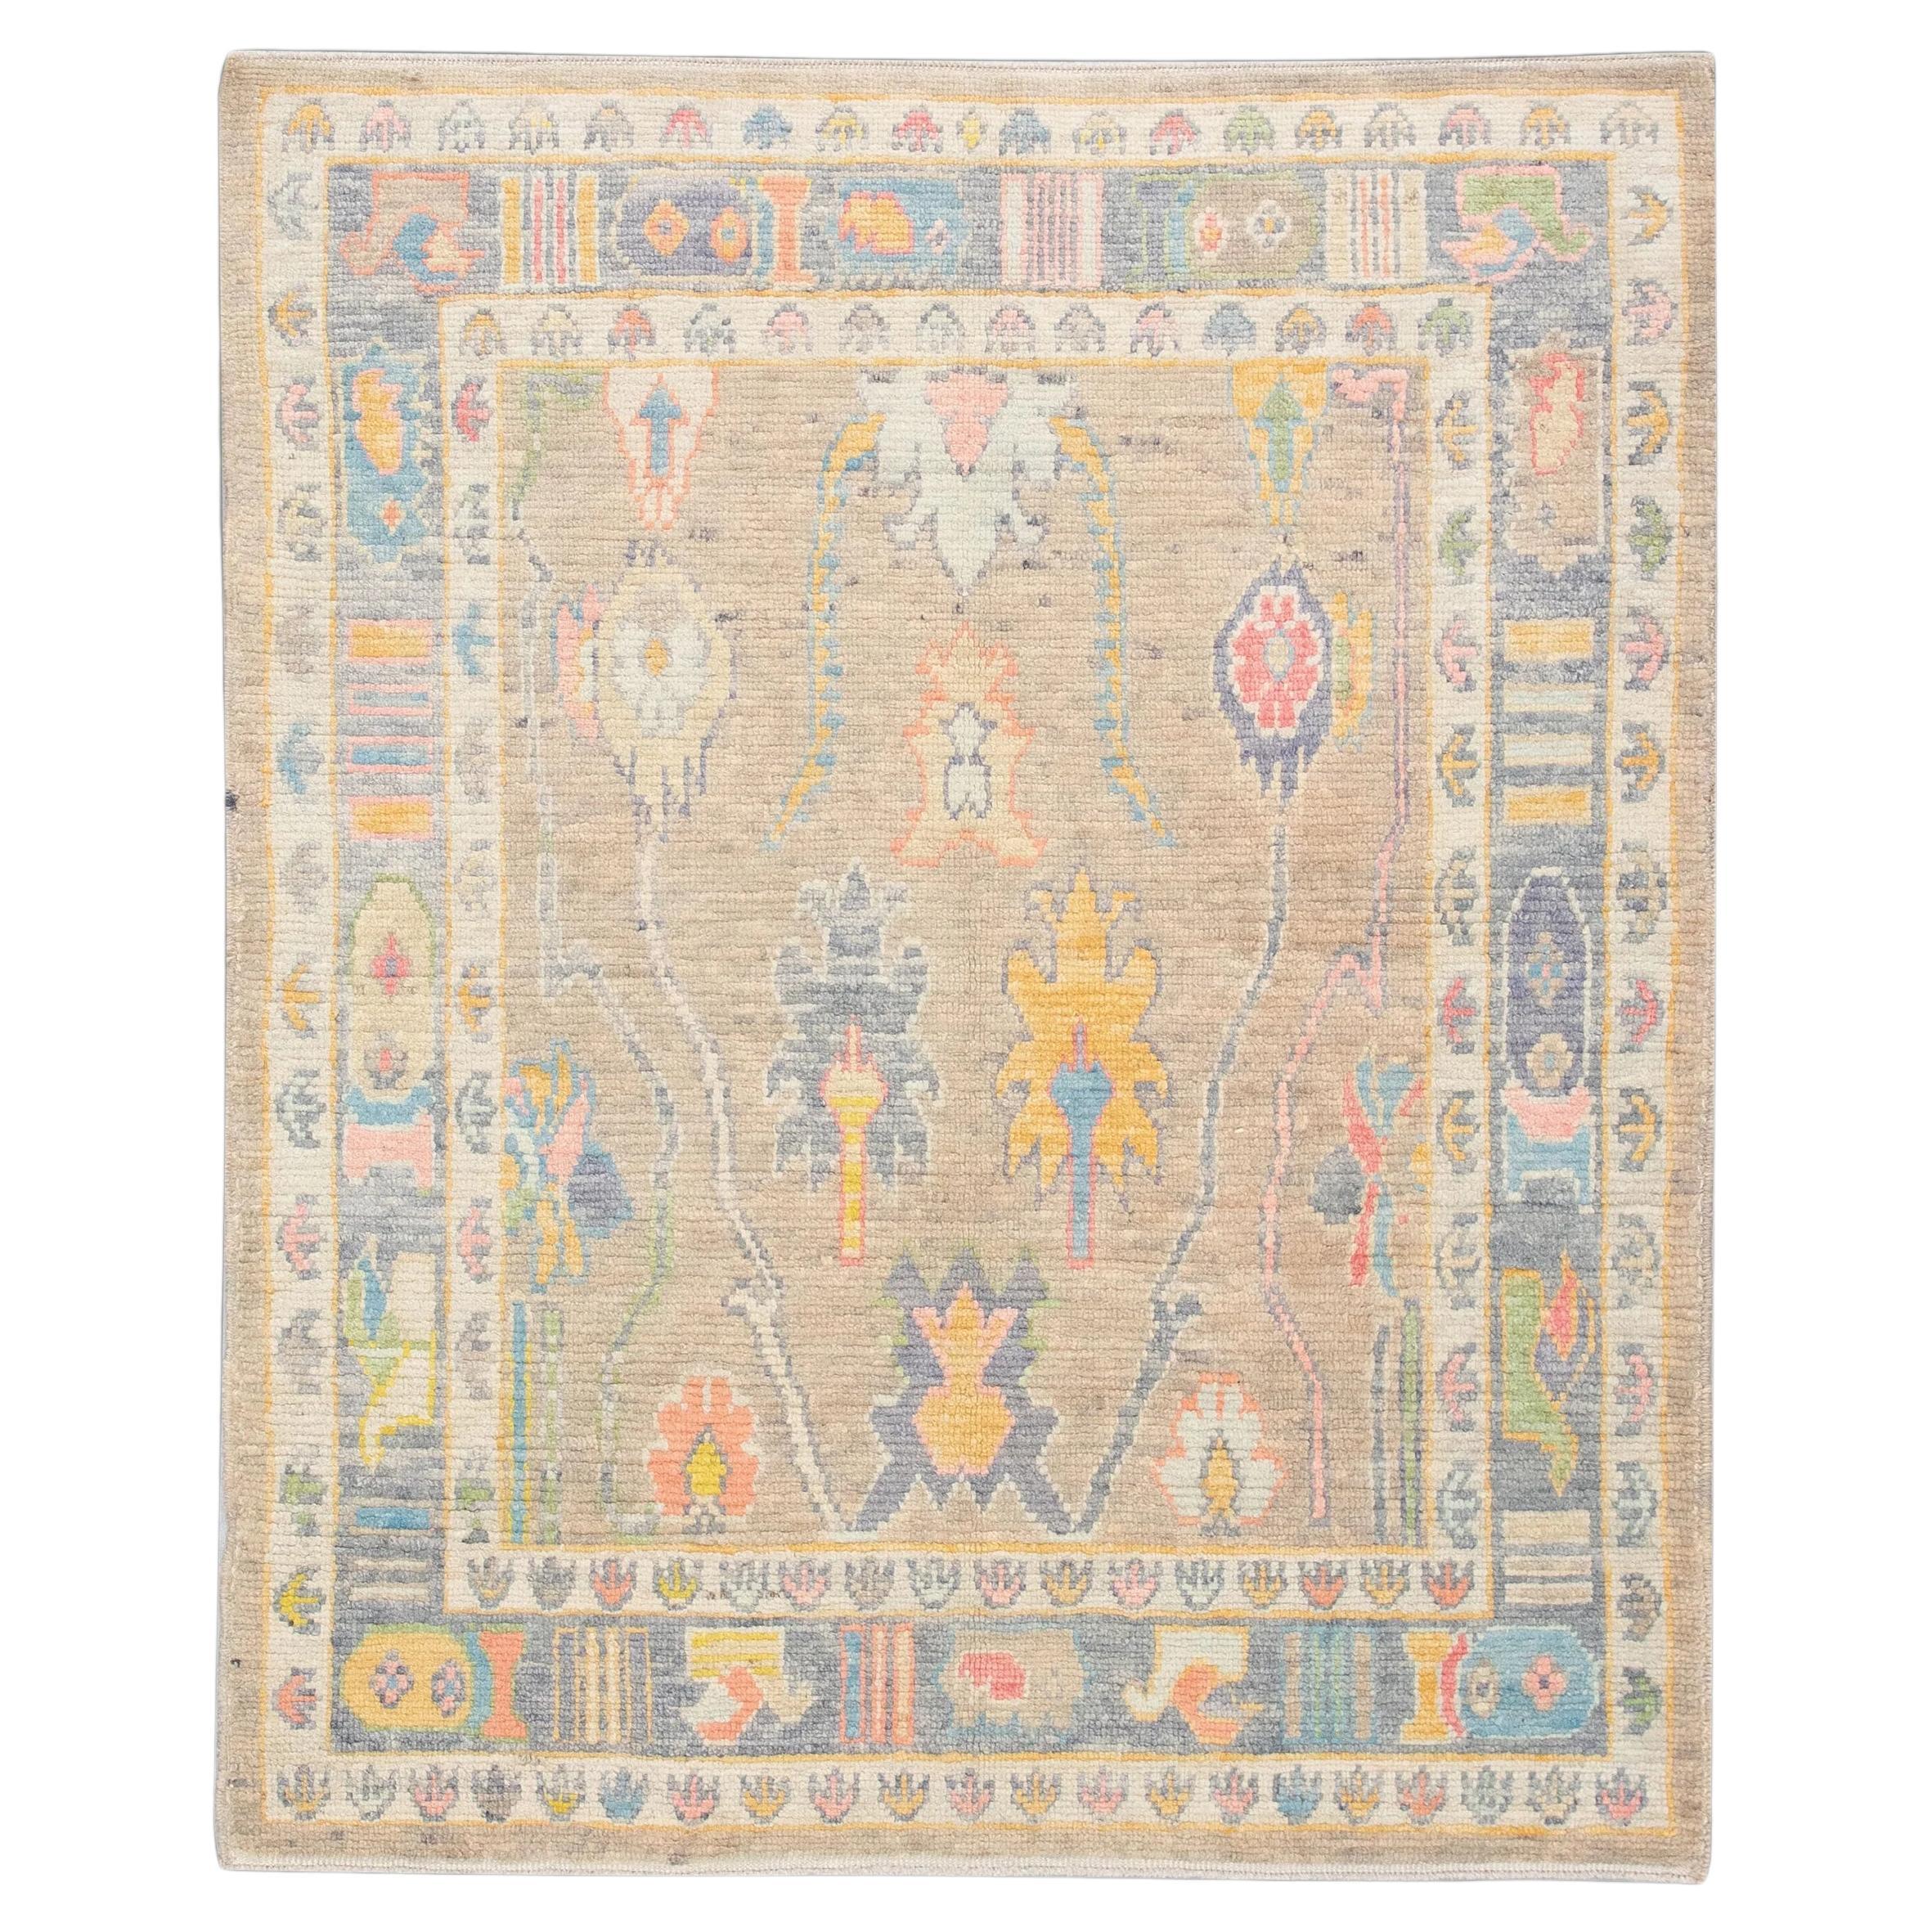 Handwoven Wool Carpet Turkish Oushak Rug 5'5" x 6'8" #4585 